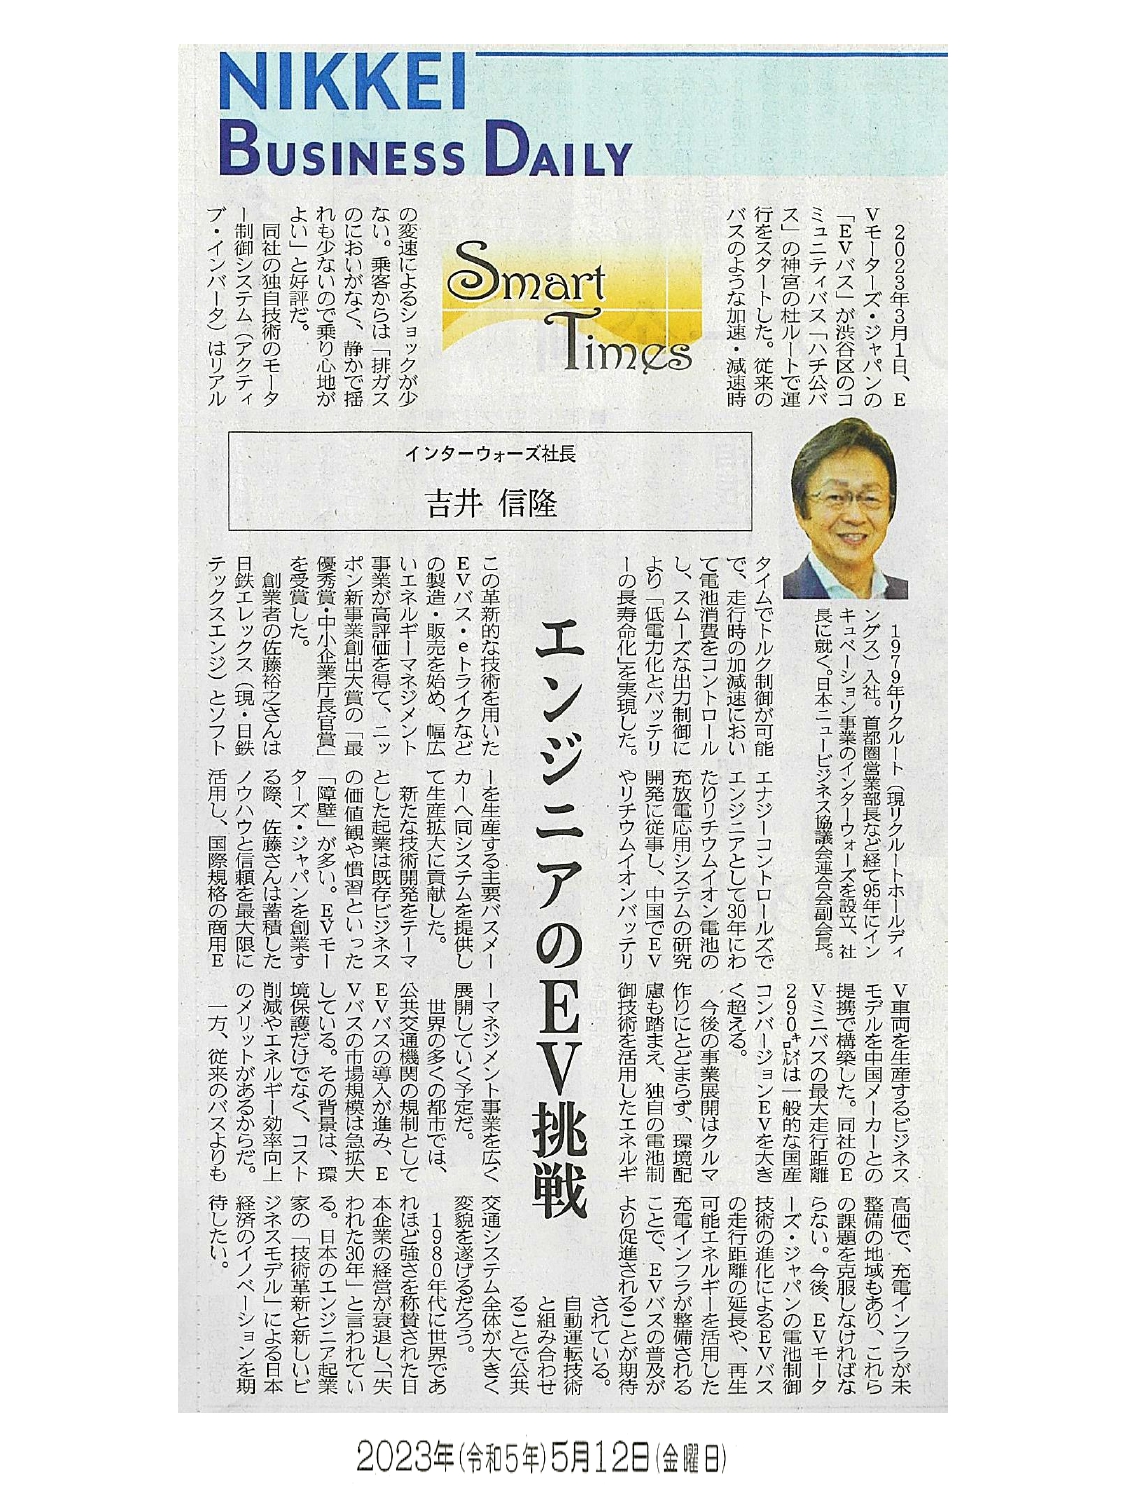 日経産業新聞 Smart Times「エンジニアのEV挑戦」